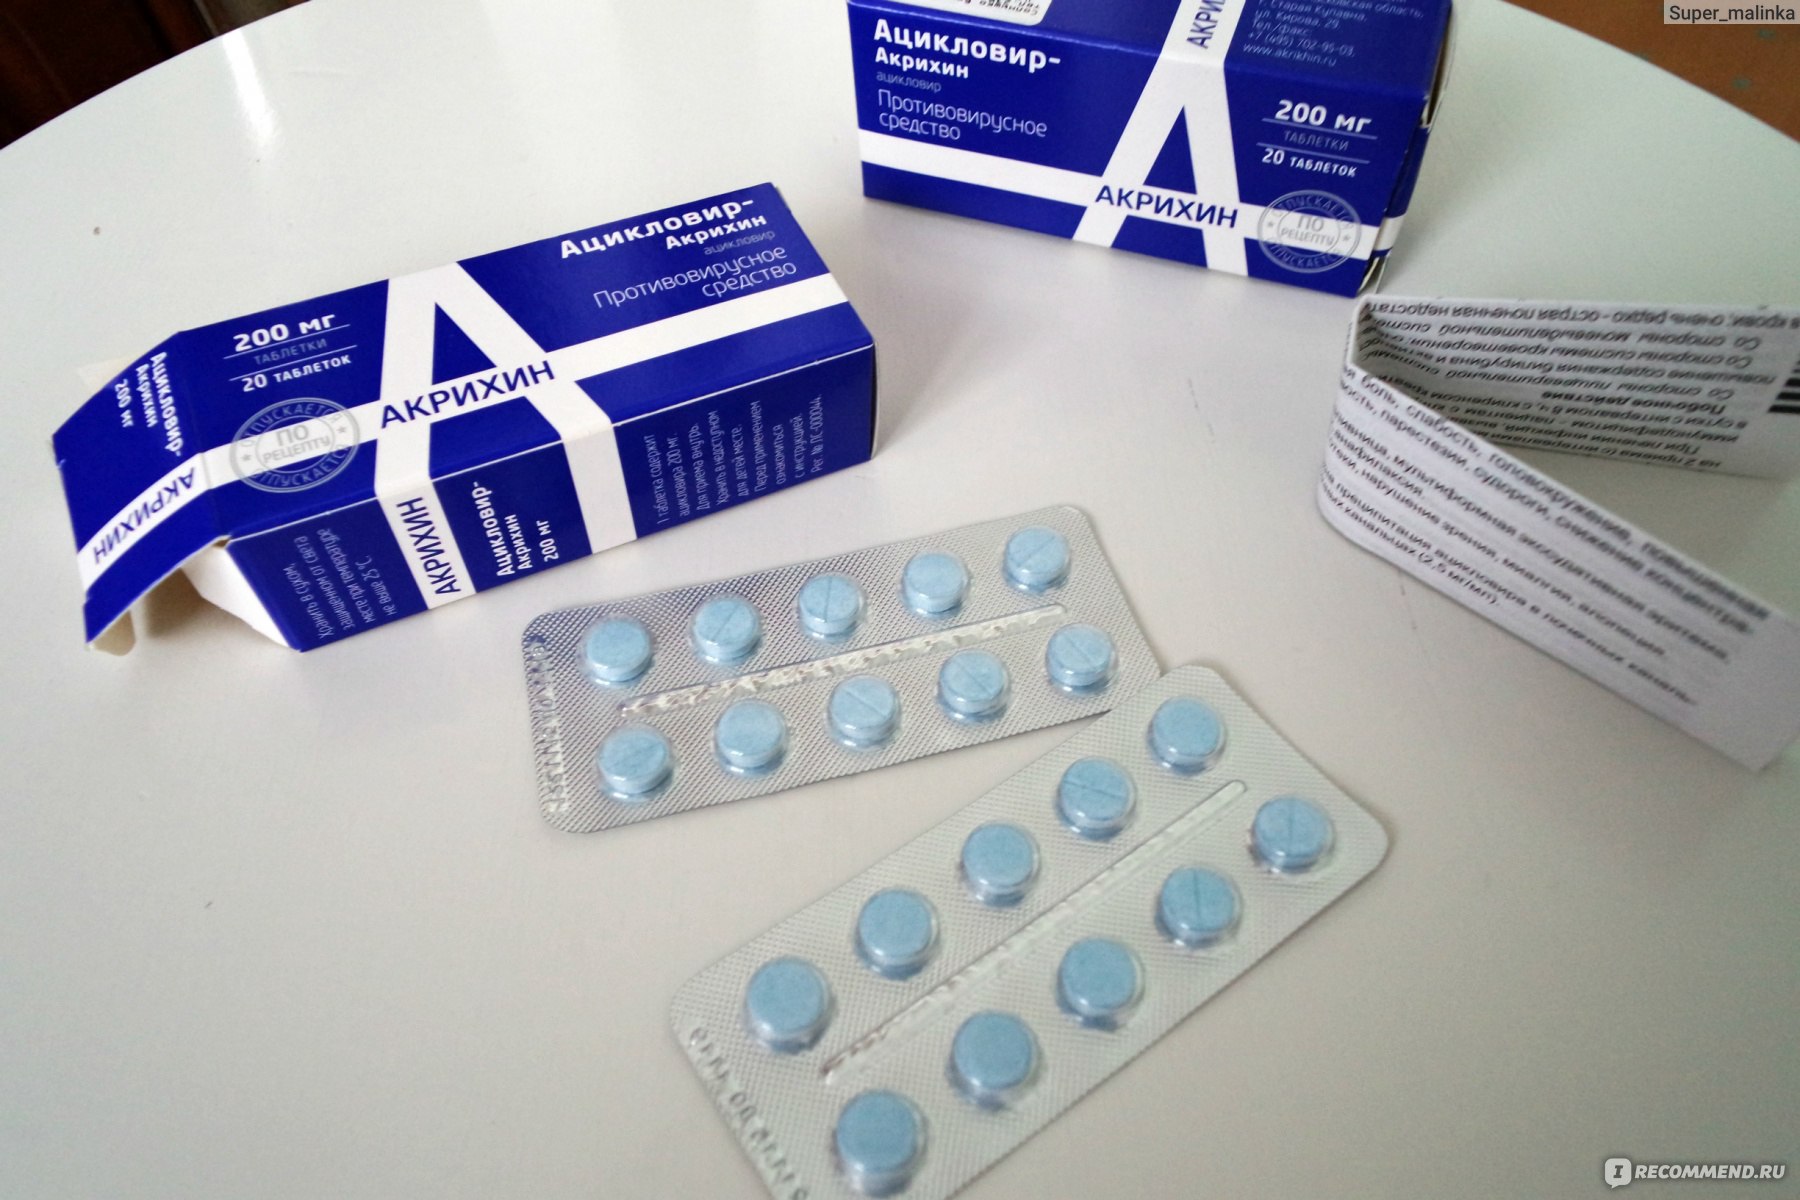 Антибиотик в синей упаковке